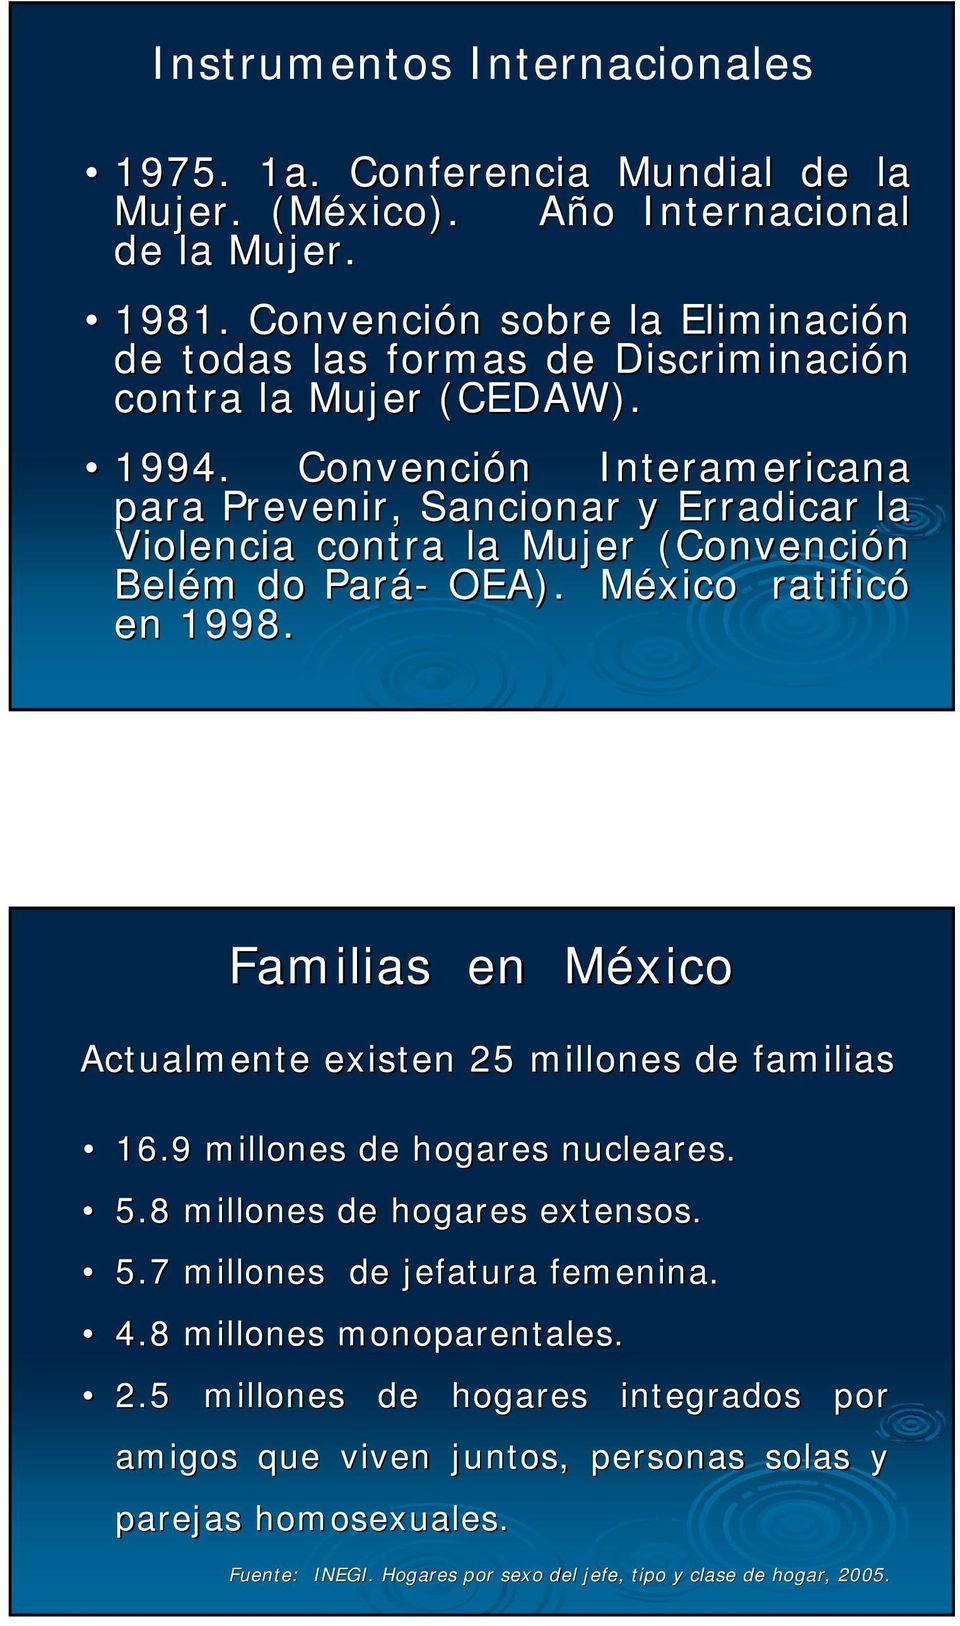 Convención n Interamericana para Prevenir, Sancionar y Erradicar la Violencia contra la Mujer (Convención Belém do Pará- OEA). México M ratificó en 1998. 16.9 millones de hogares nucleares.